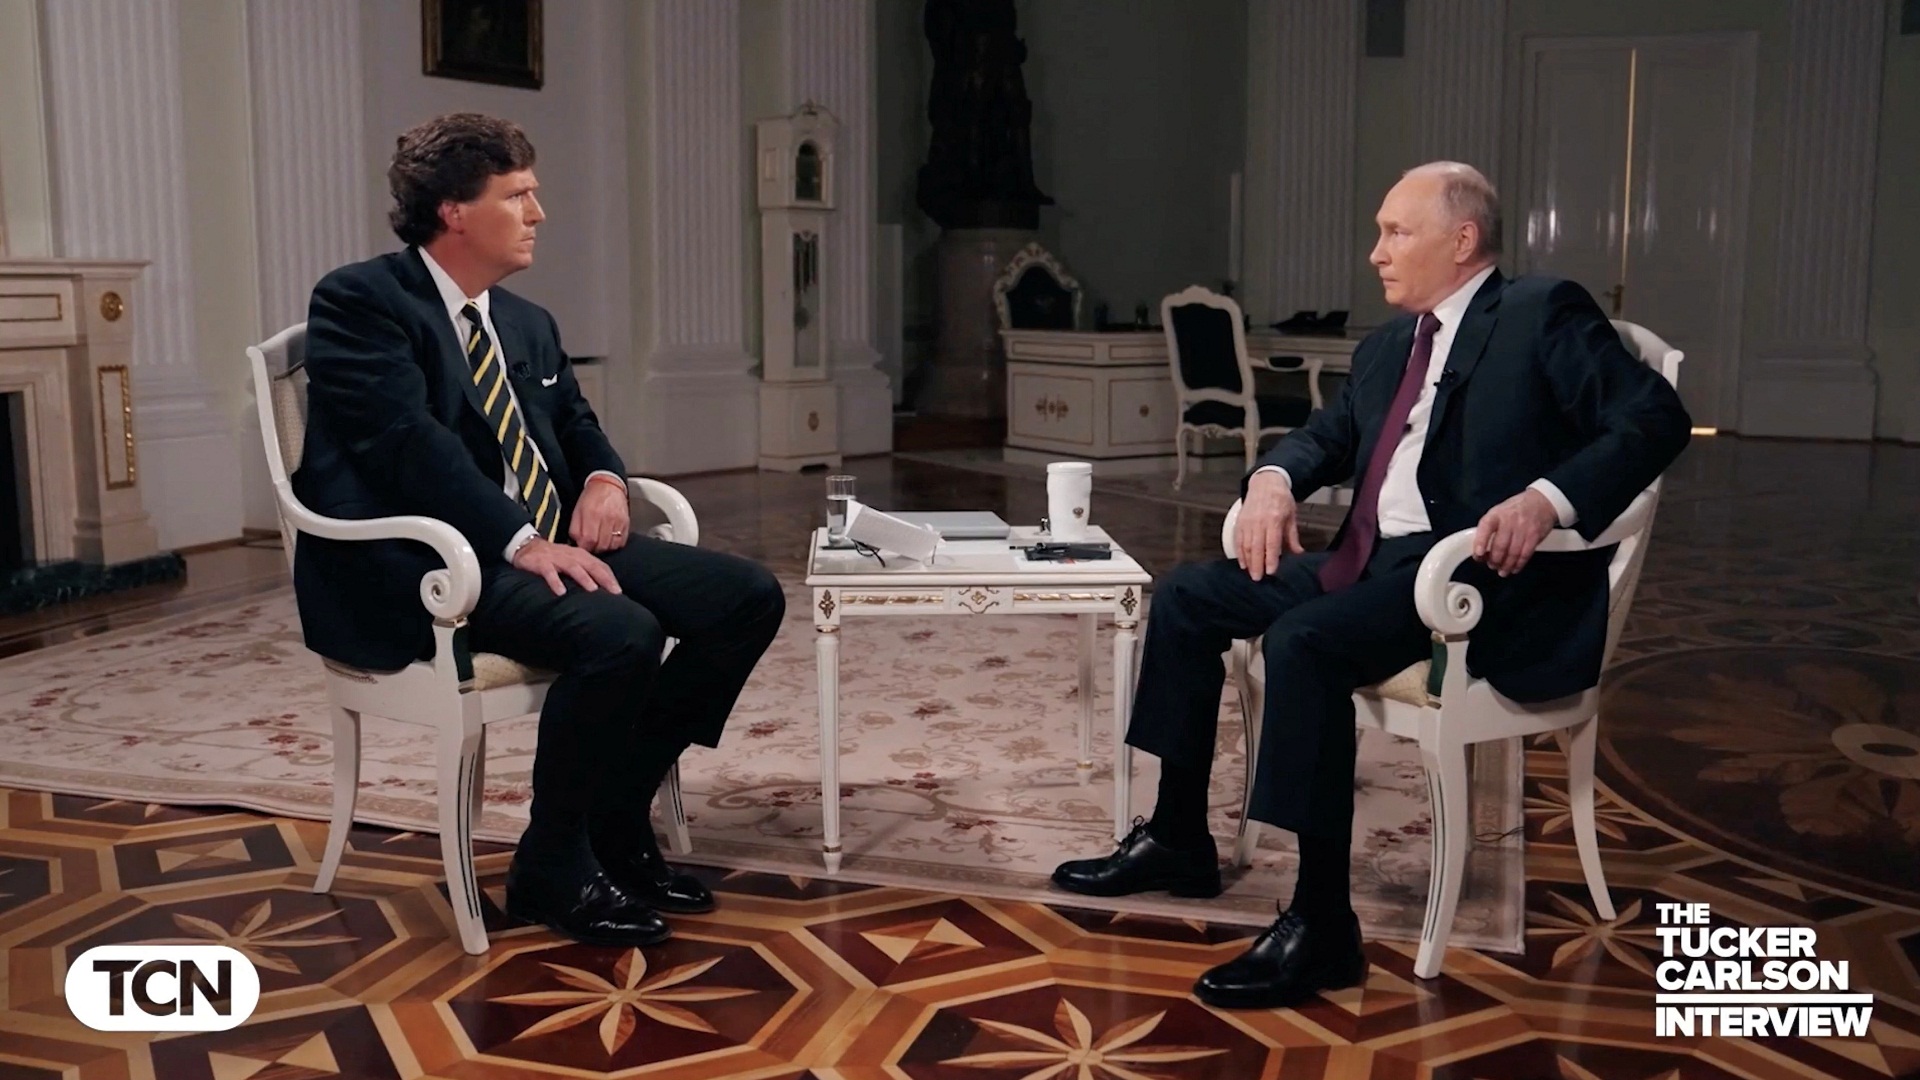 Στα ελληνικά όλη η συνέντευξη του Β.Πούτιν στον δημοσιογράφο Τ.Κάρλσον: «Μετά τον πόλεμο η Ουκρανία θα μοιραστεί σε 4 κράτη»